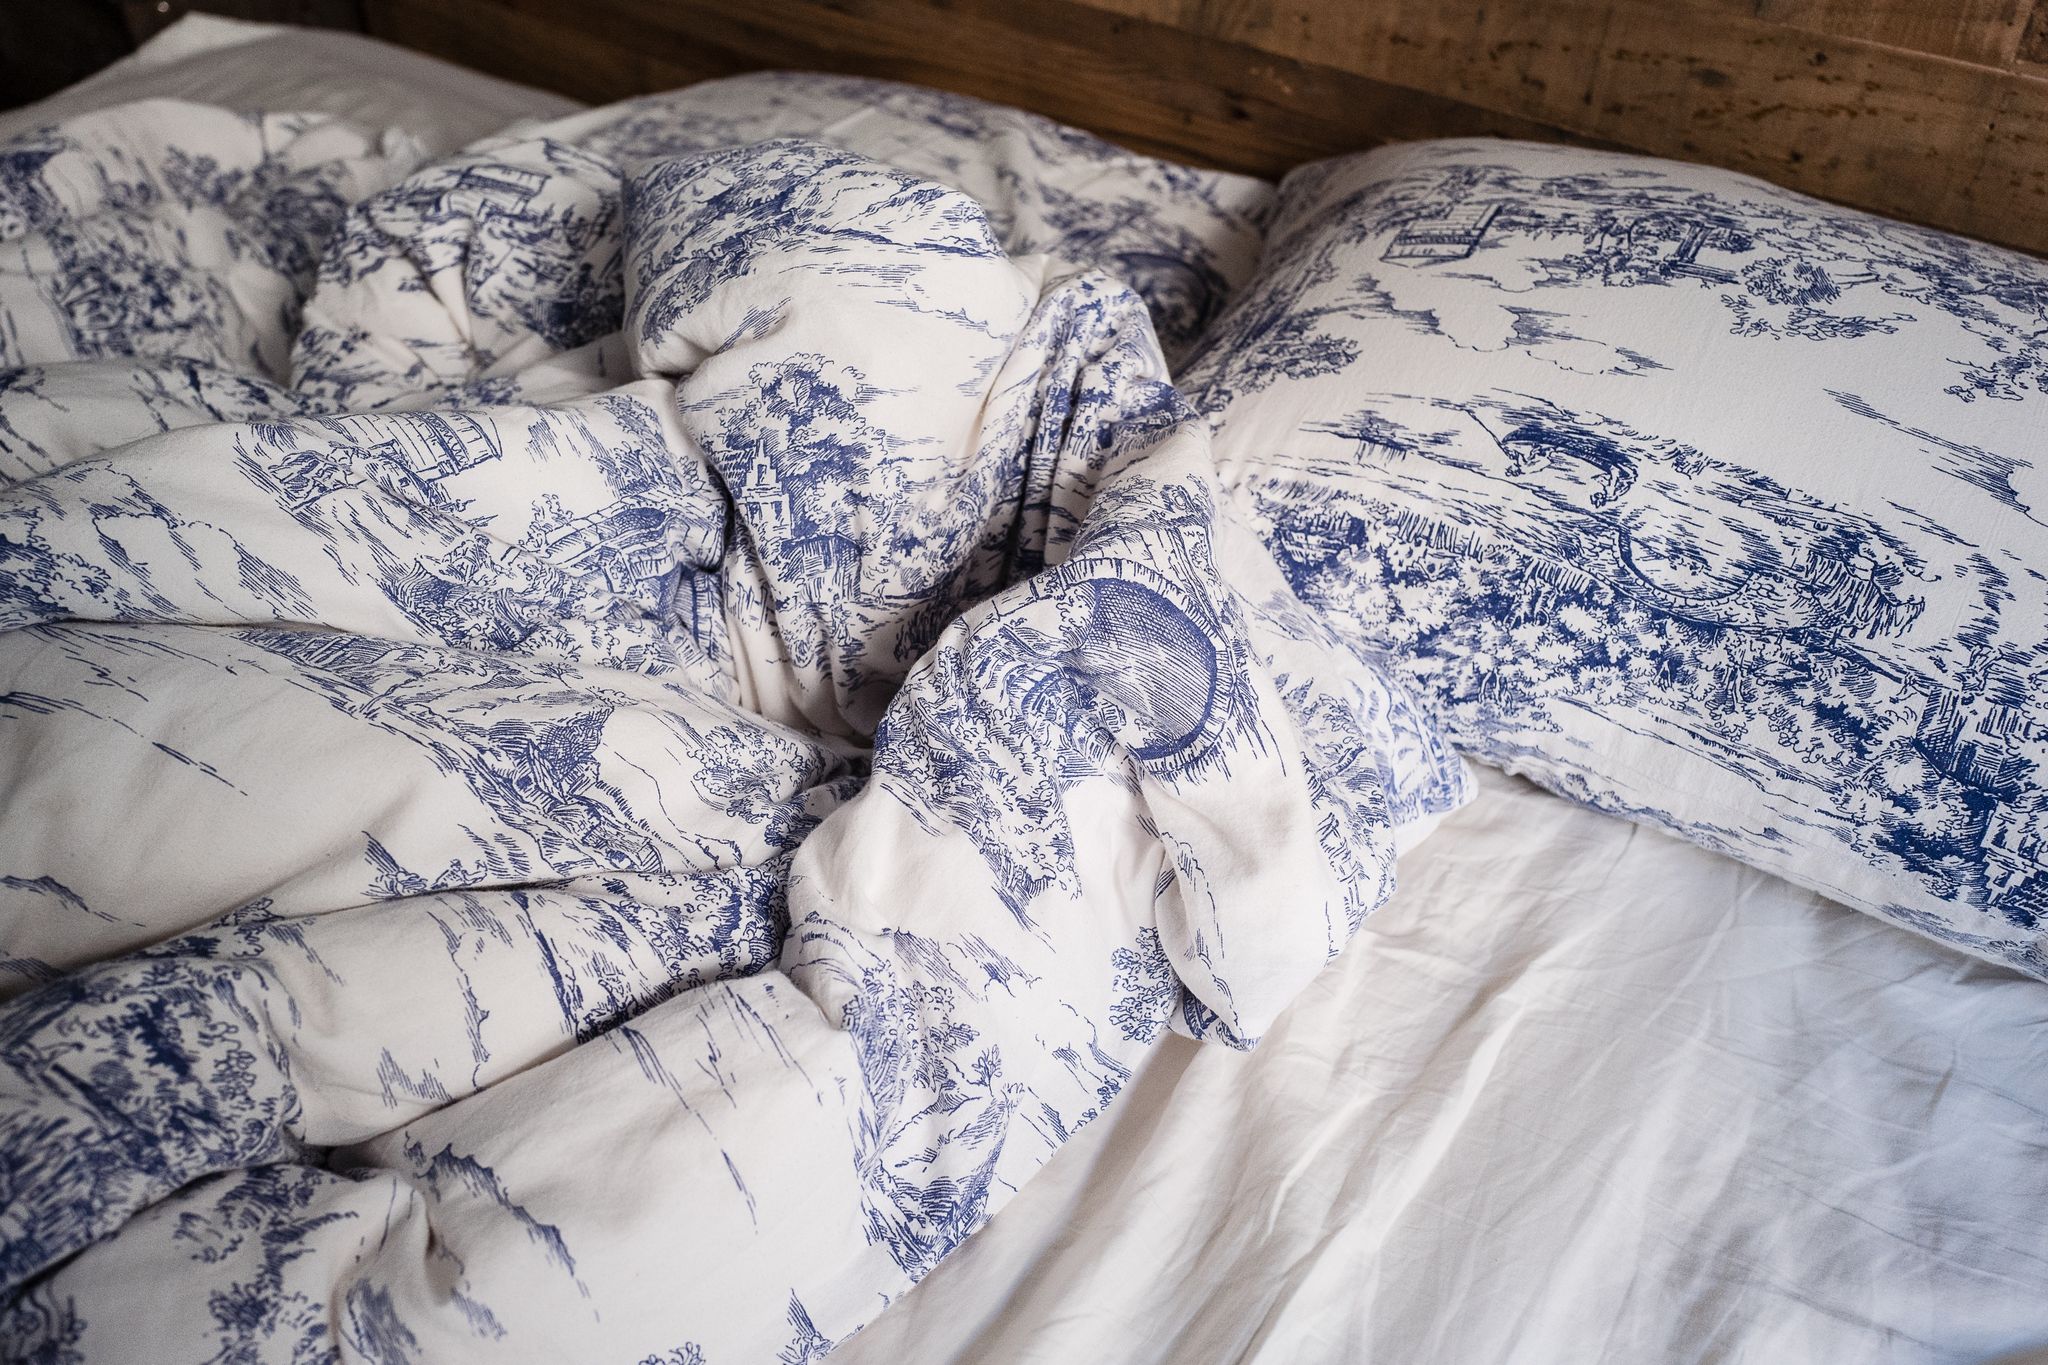 Blue, Textile, Bed sheet, Bedding, Linens, Pattern, Duvet cover, Room, Duvet, Slipcover, 